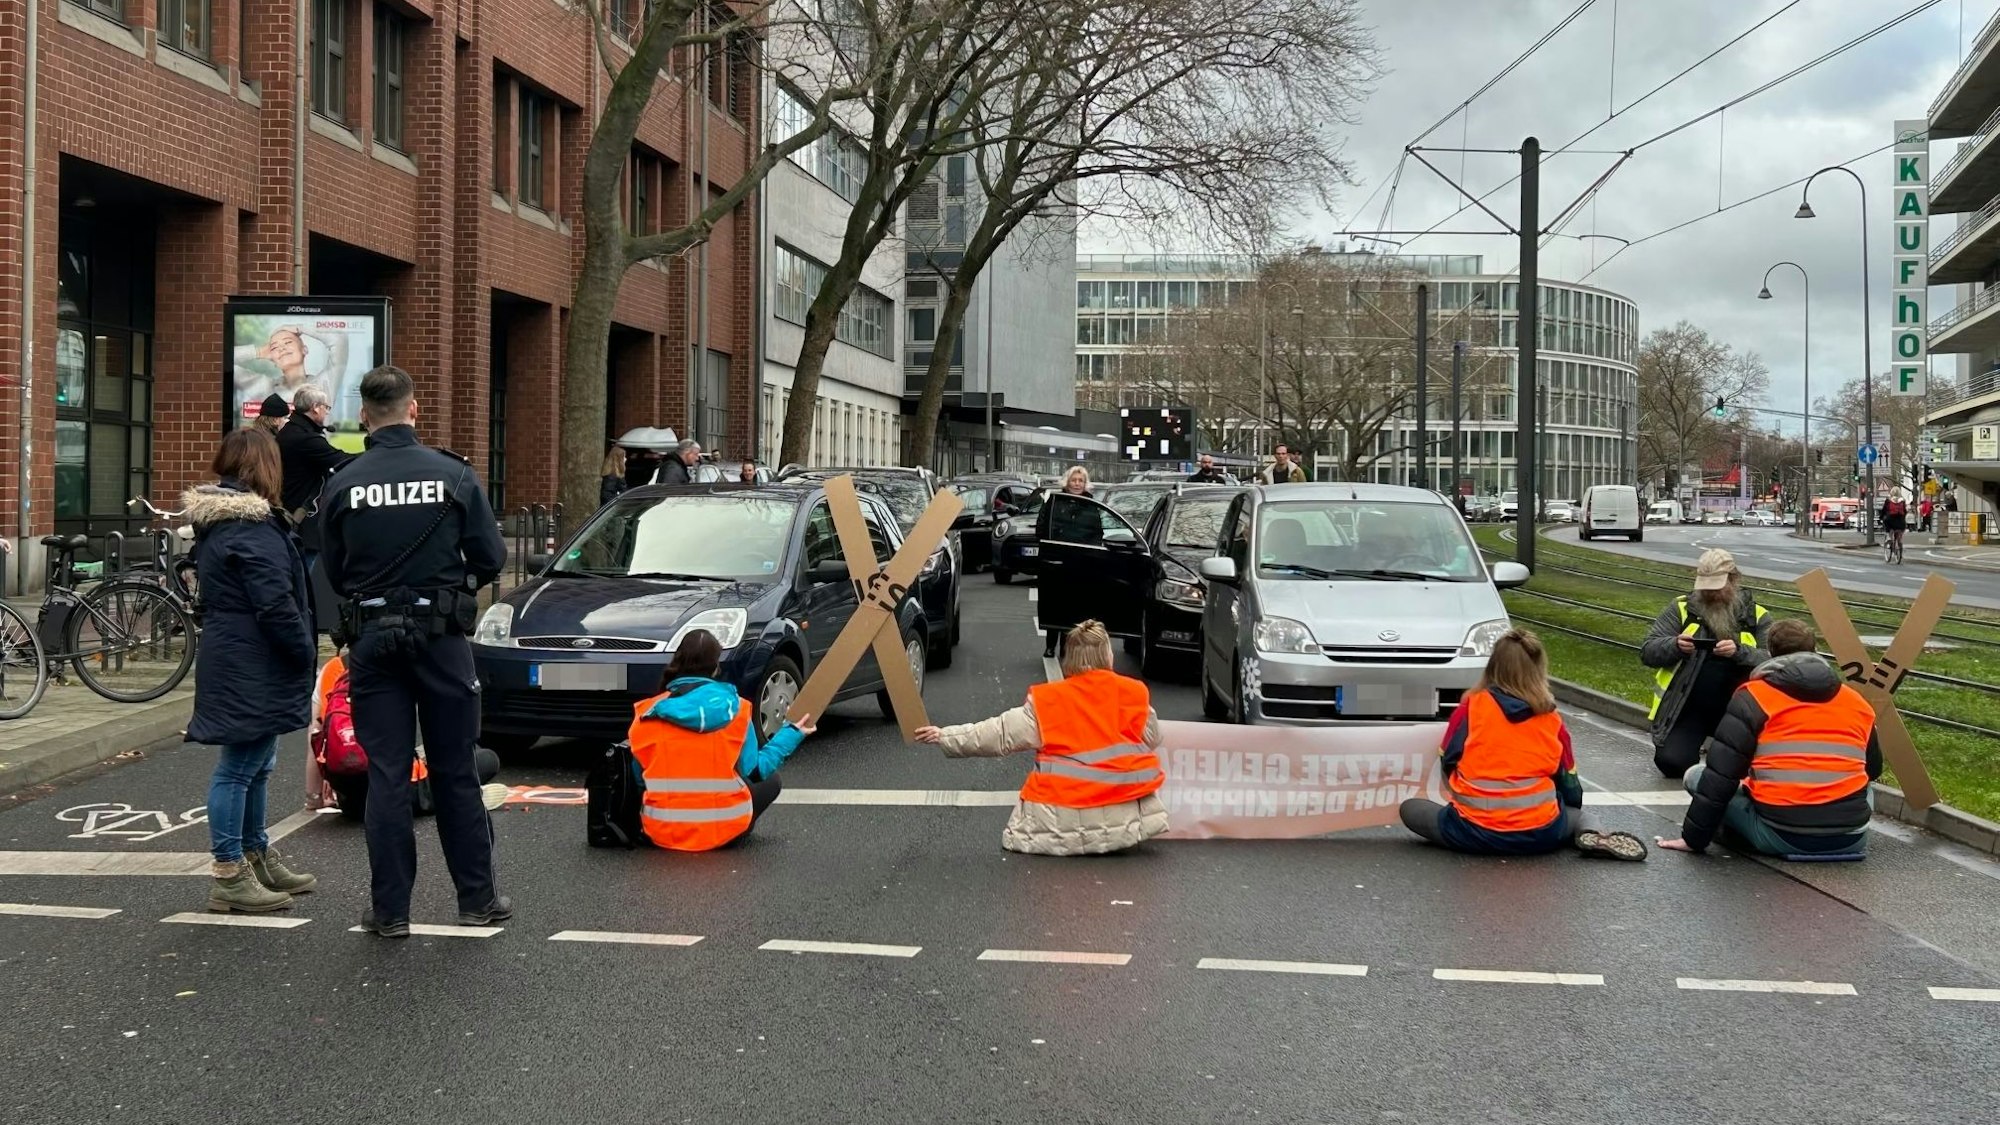 Aktivistinnen und Aktivisten der „Letzten Generation“ blockieren am Freitagmittag mit einer Sitzblockade die Cäcilienstraße, eine der zentralen Verkehrsachsen in der Kölner Innenstadt.